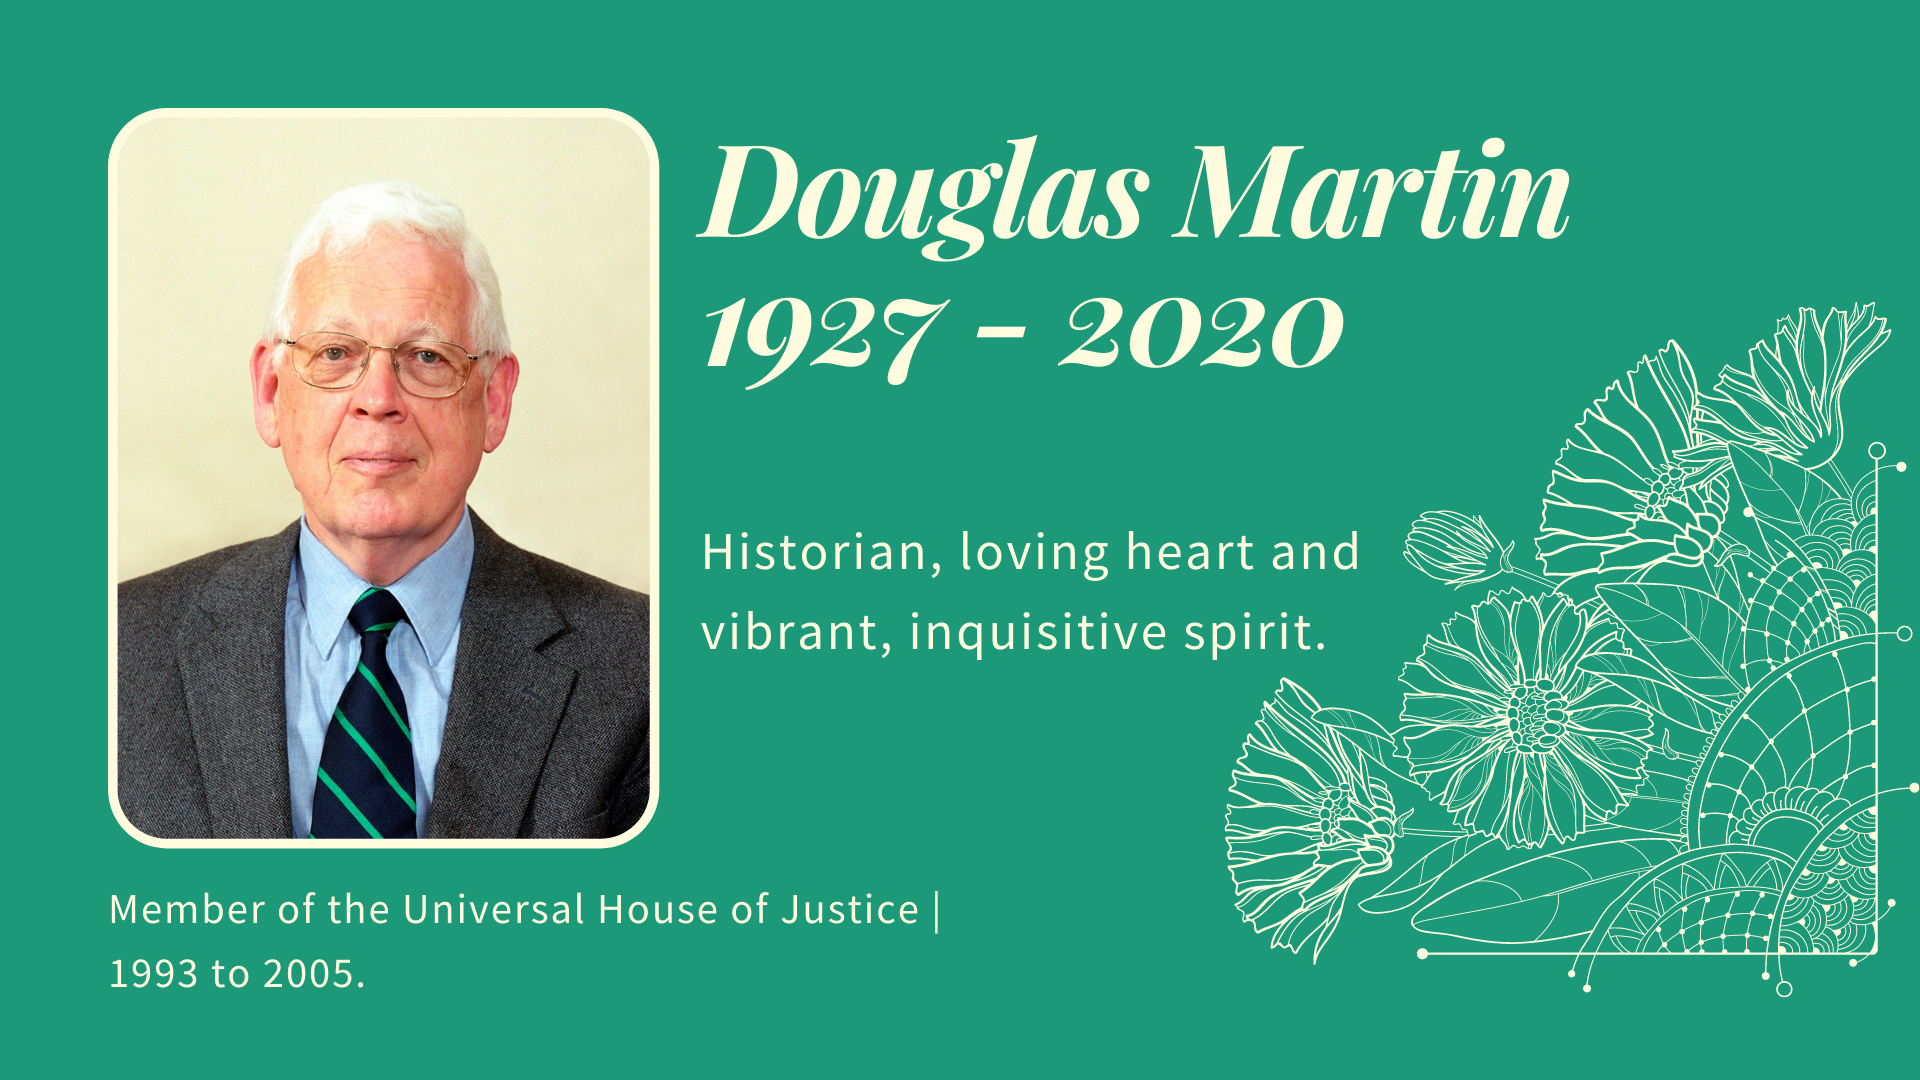 Canada hosts memorial for Douglas Martin